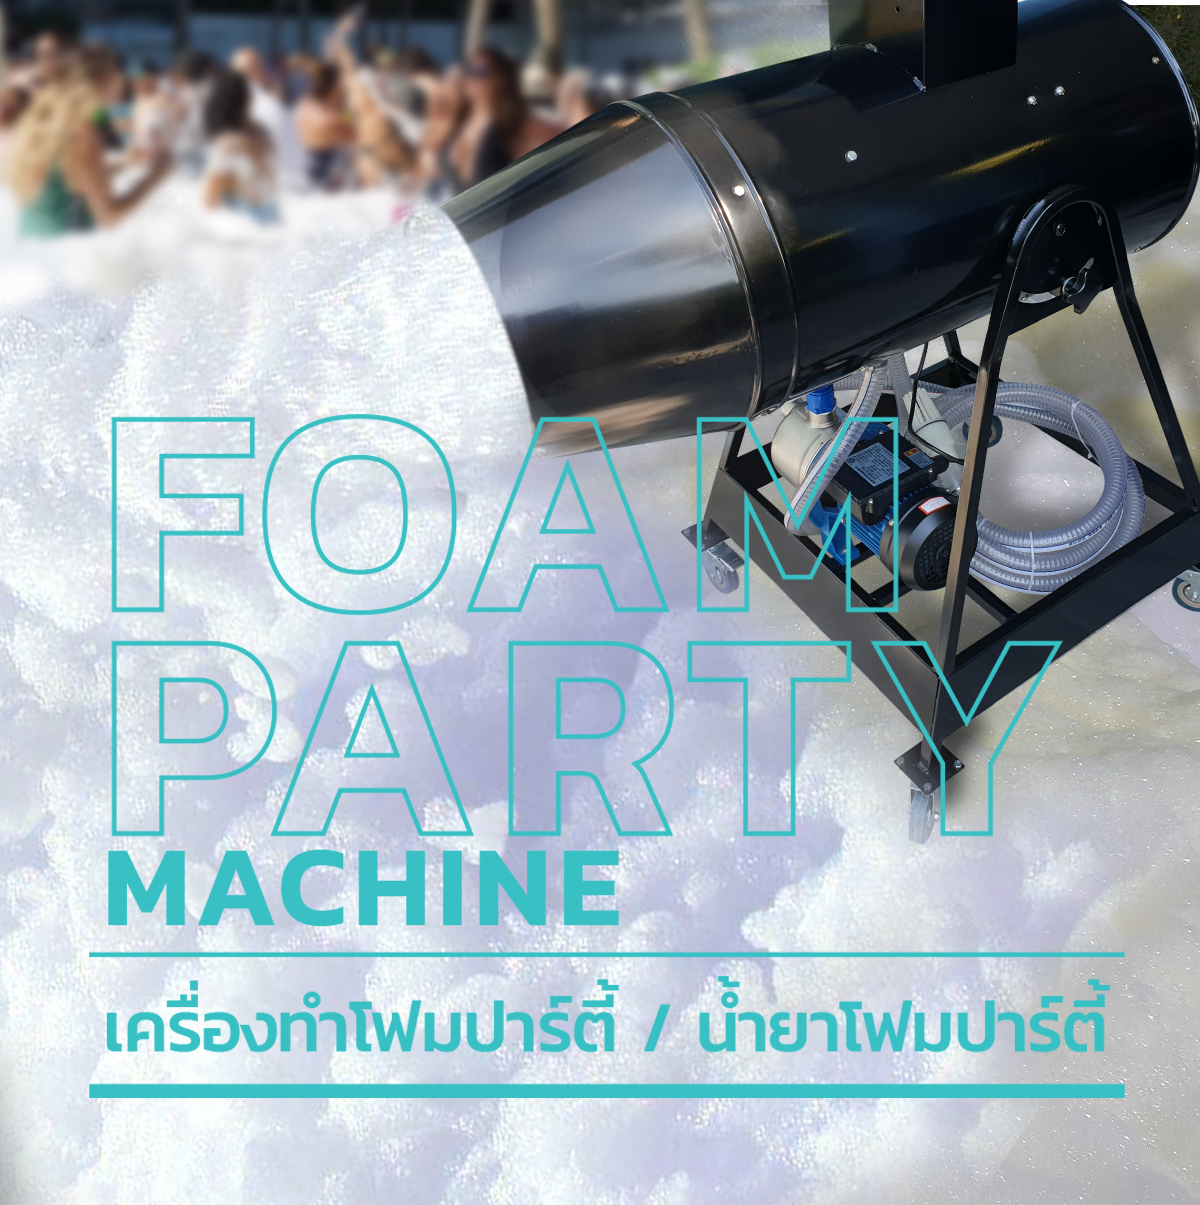 น้ำยาโฟมปาร์ตี้, น้ำยาโฟมสวนน้ำ, น้ำยาโฟม เครื่องโฟมปาร์ตี้ / เครื่องทำโฟม, เครื่องทำโพมปาร์ตี้แบบชู้ต / JET Foam Party Machine,เครื่องโฟมปาร์ตี้ / Foam Party Machine